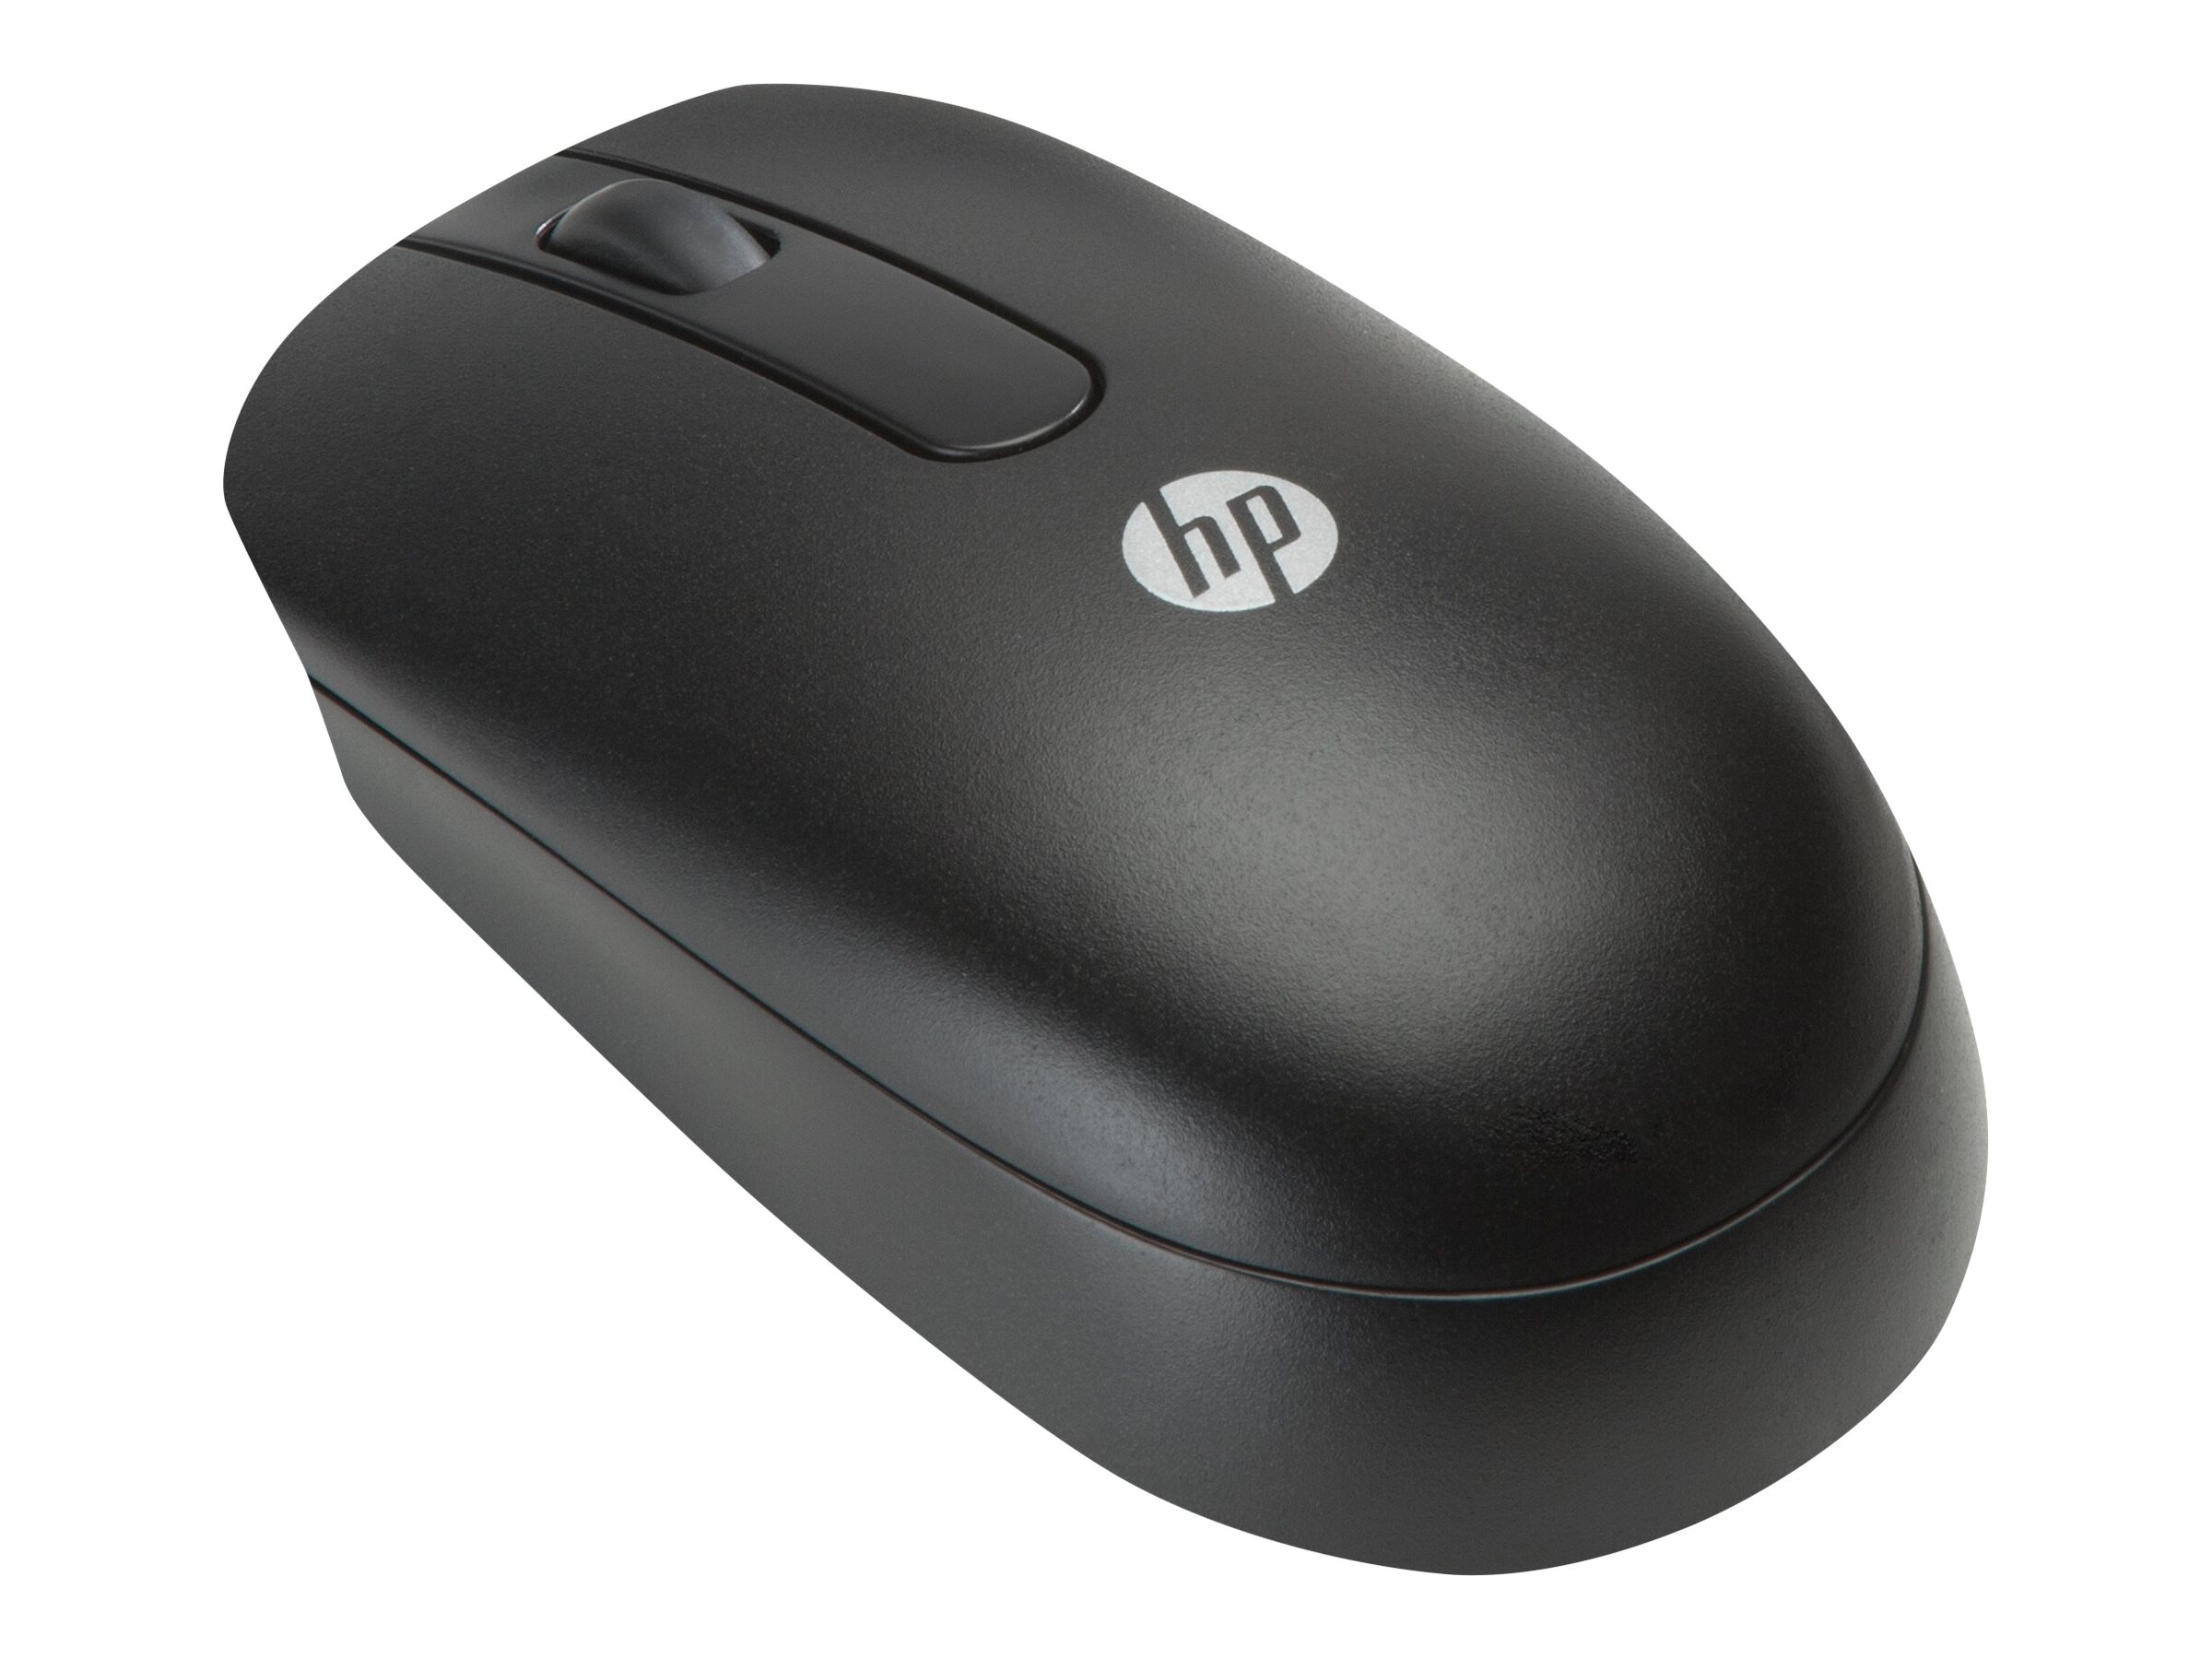 Helemaal droog Samengroeiing over het algemeen HP - Mouse - right and left-handed | www.publicsector.shidirect.com